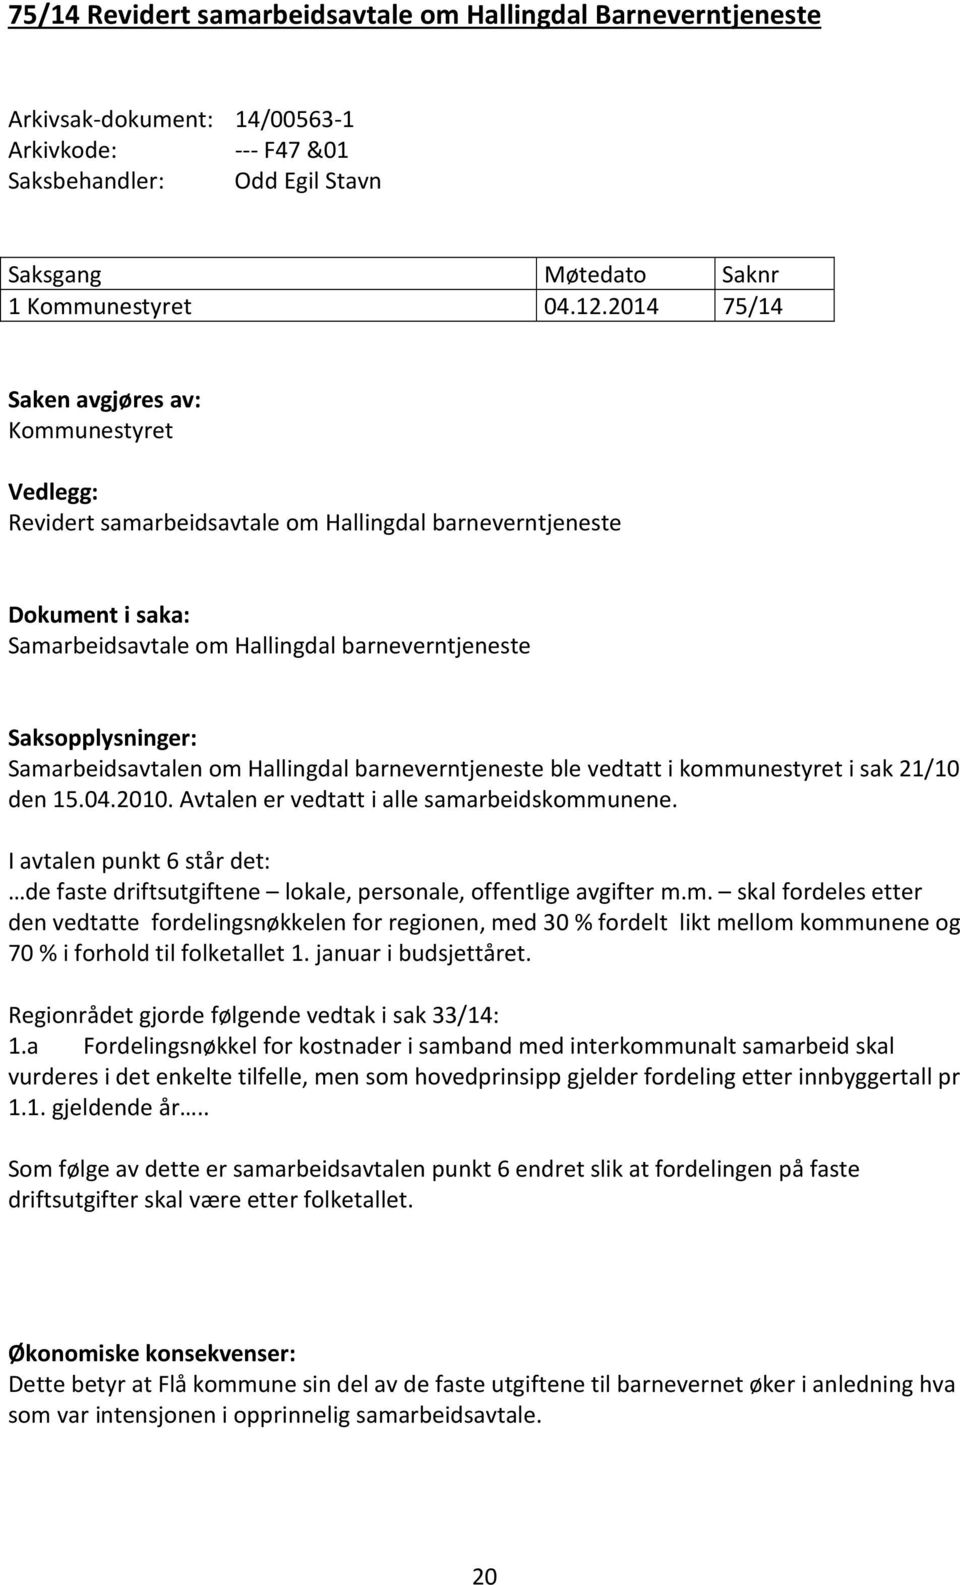 Samarbeidsavtalen om Hallingdal barneverntjeneste ble vedtatt i kommunestyret i sak 21/10 den 15.04.2010. Avtalen er vedtatt i alle samarbeidskommunene.